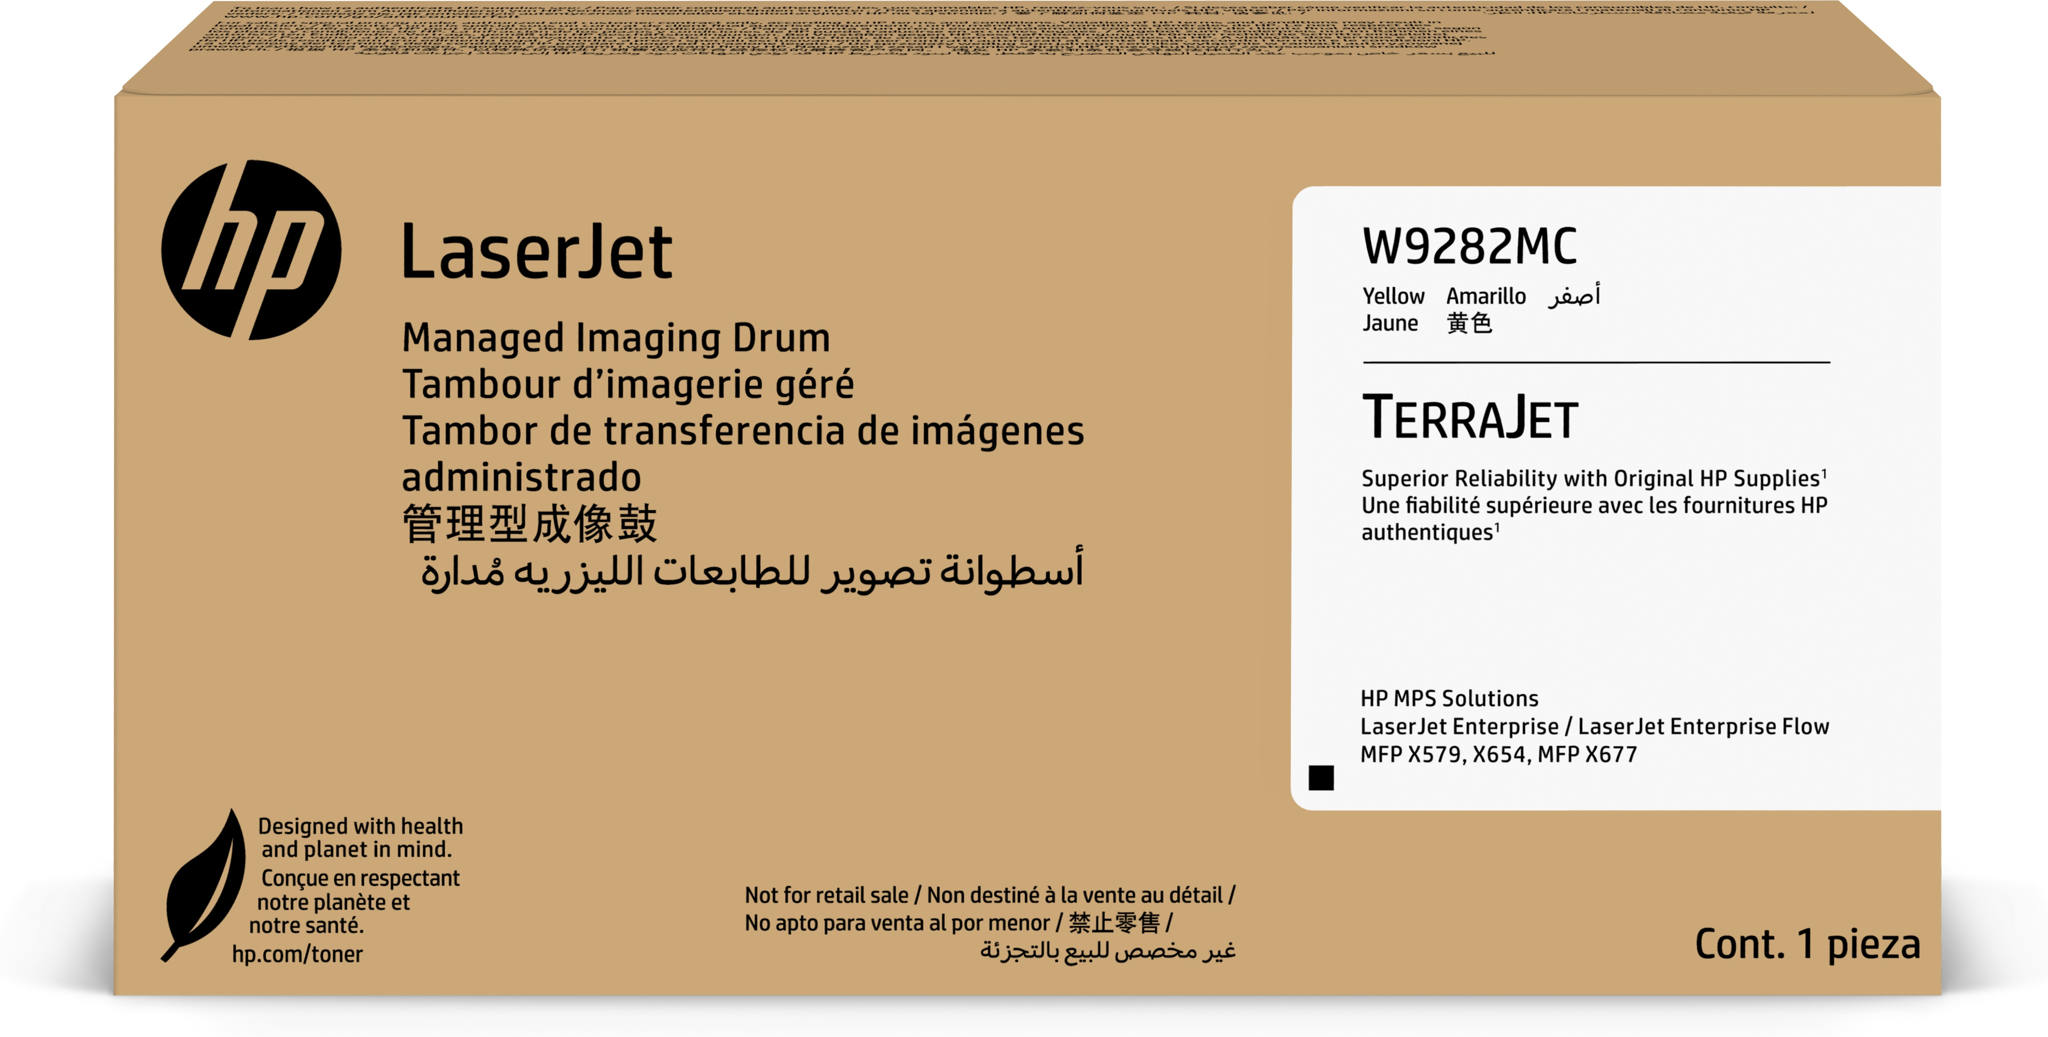 Bild von HP LaserJet W9282MC Gelb Managed Original Bildtrommel, 150000 Seiten, Gelb, 1 Stück(e)